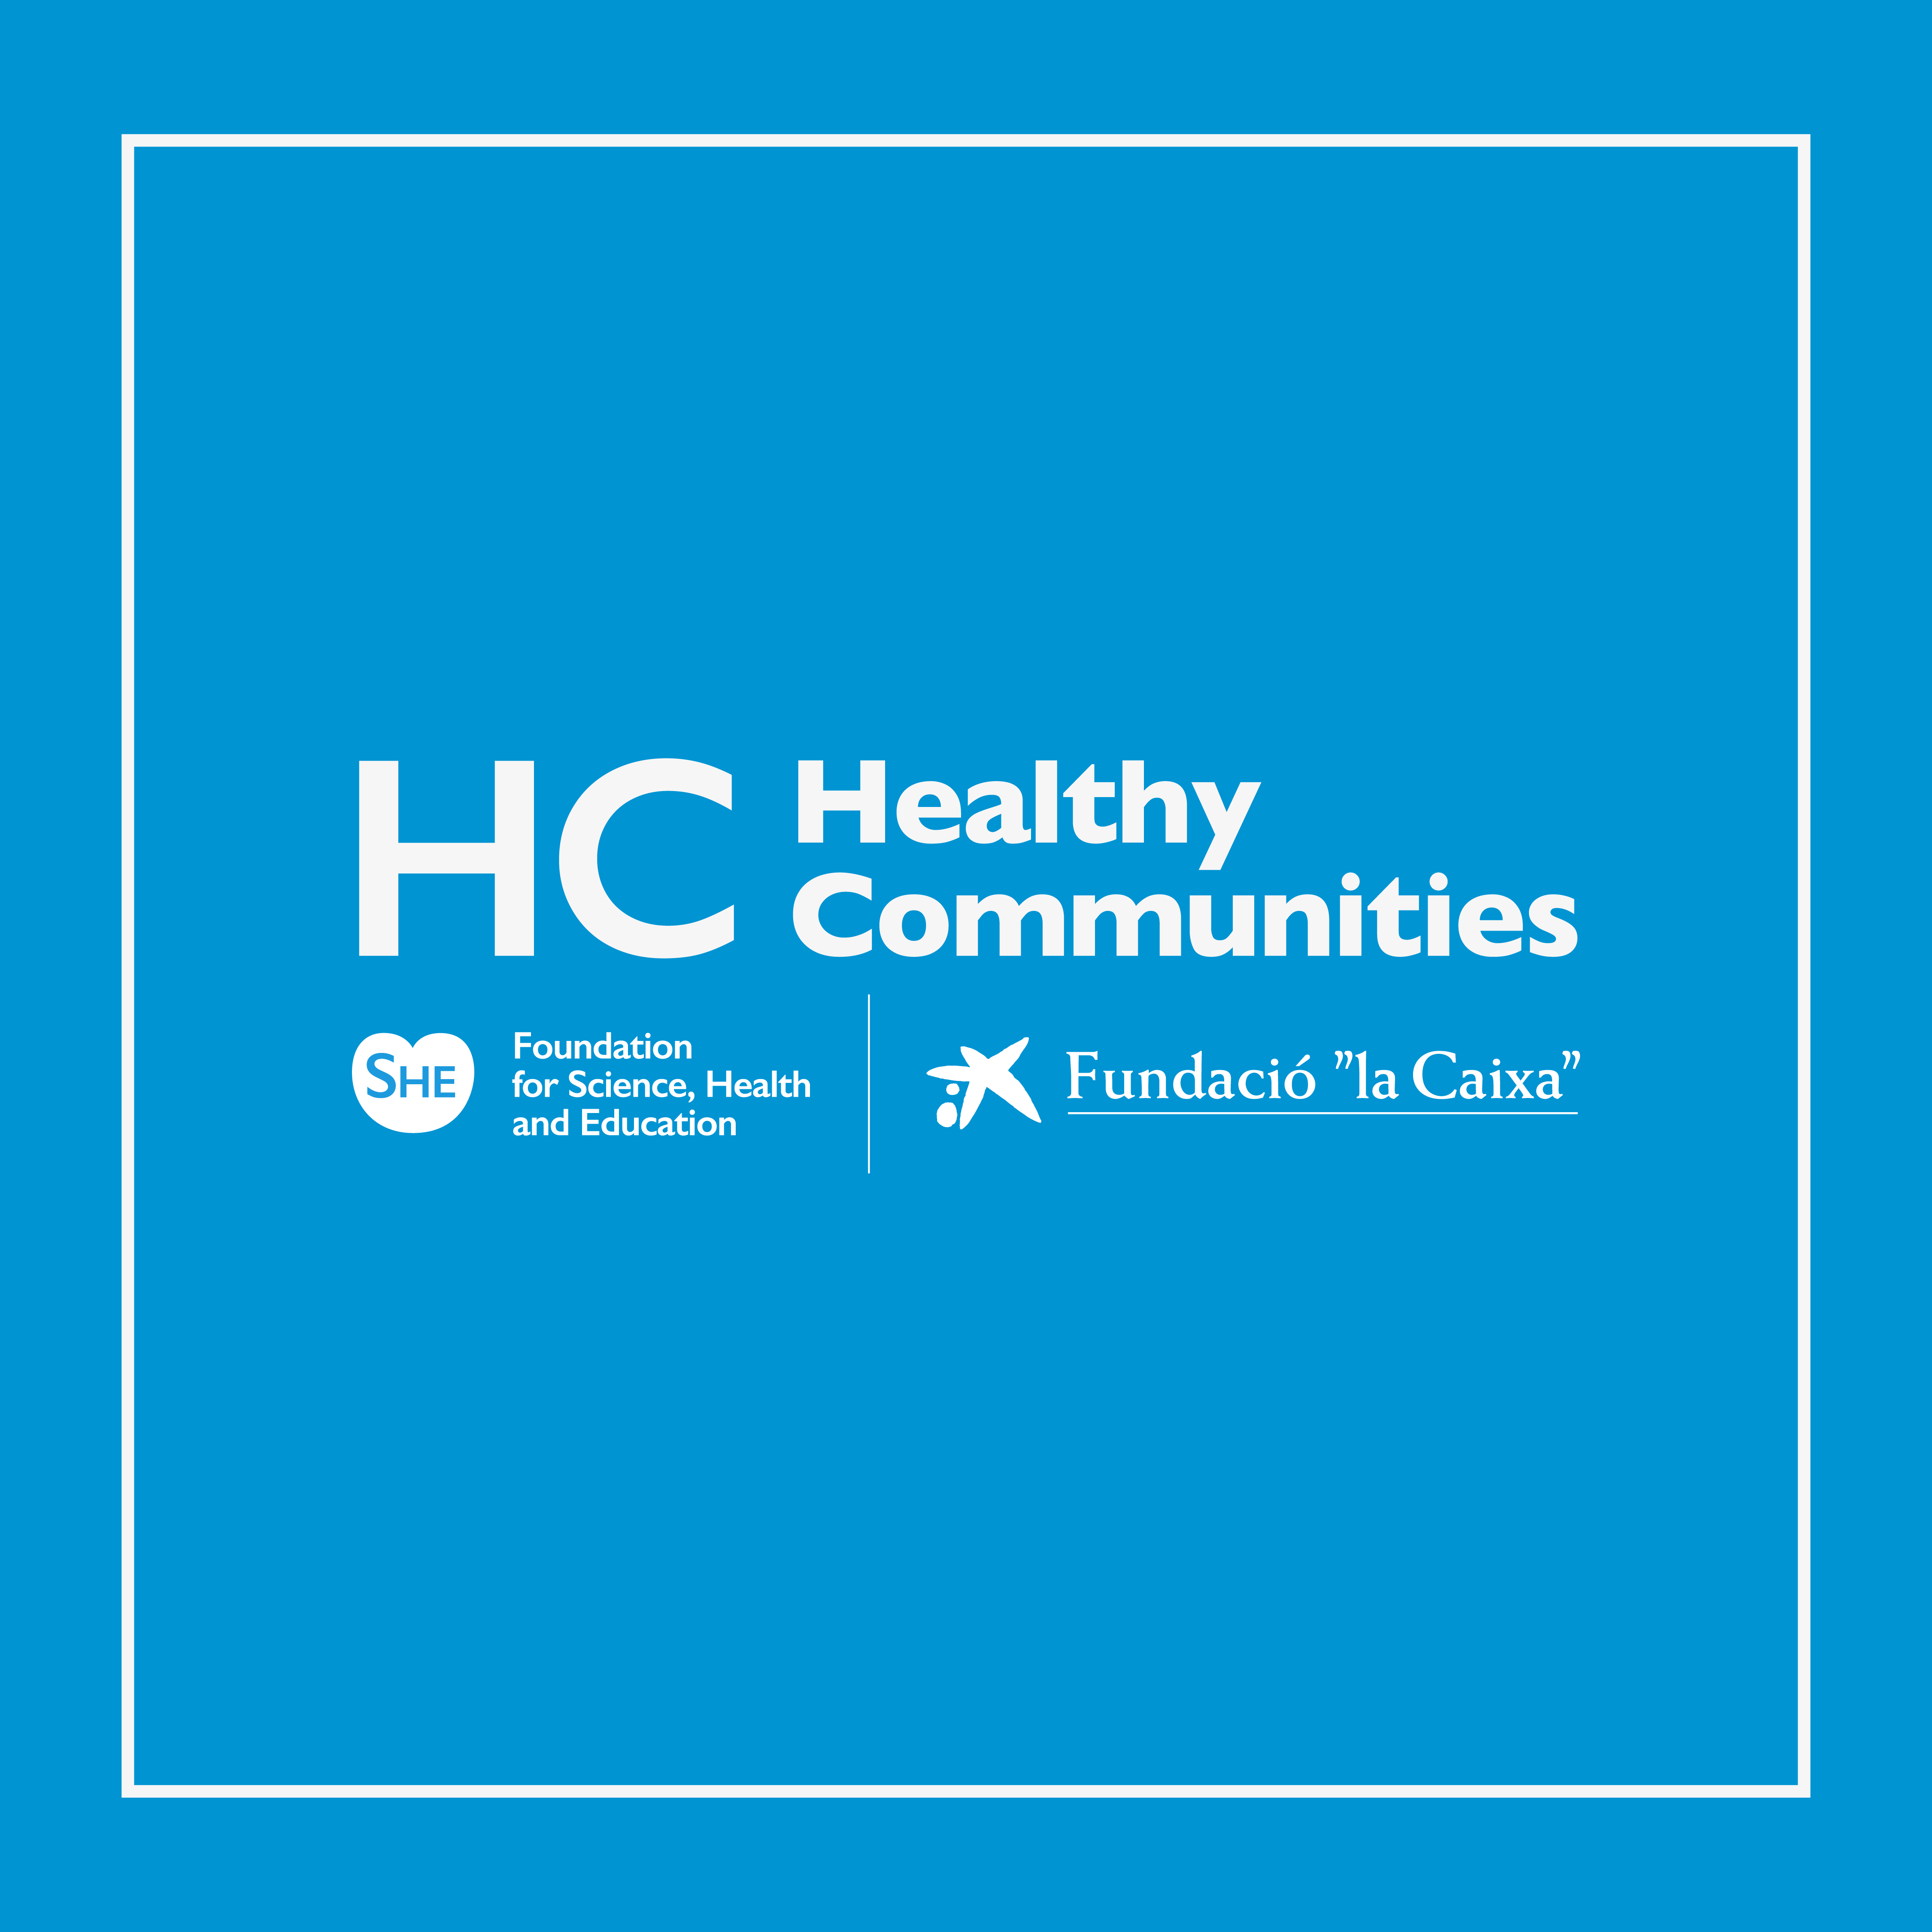 Retomamos el Healthy Communities